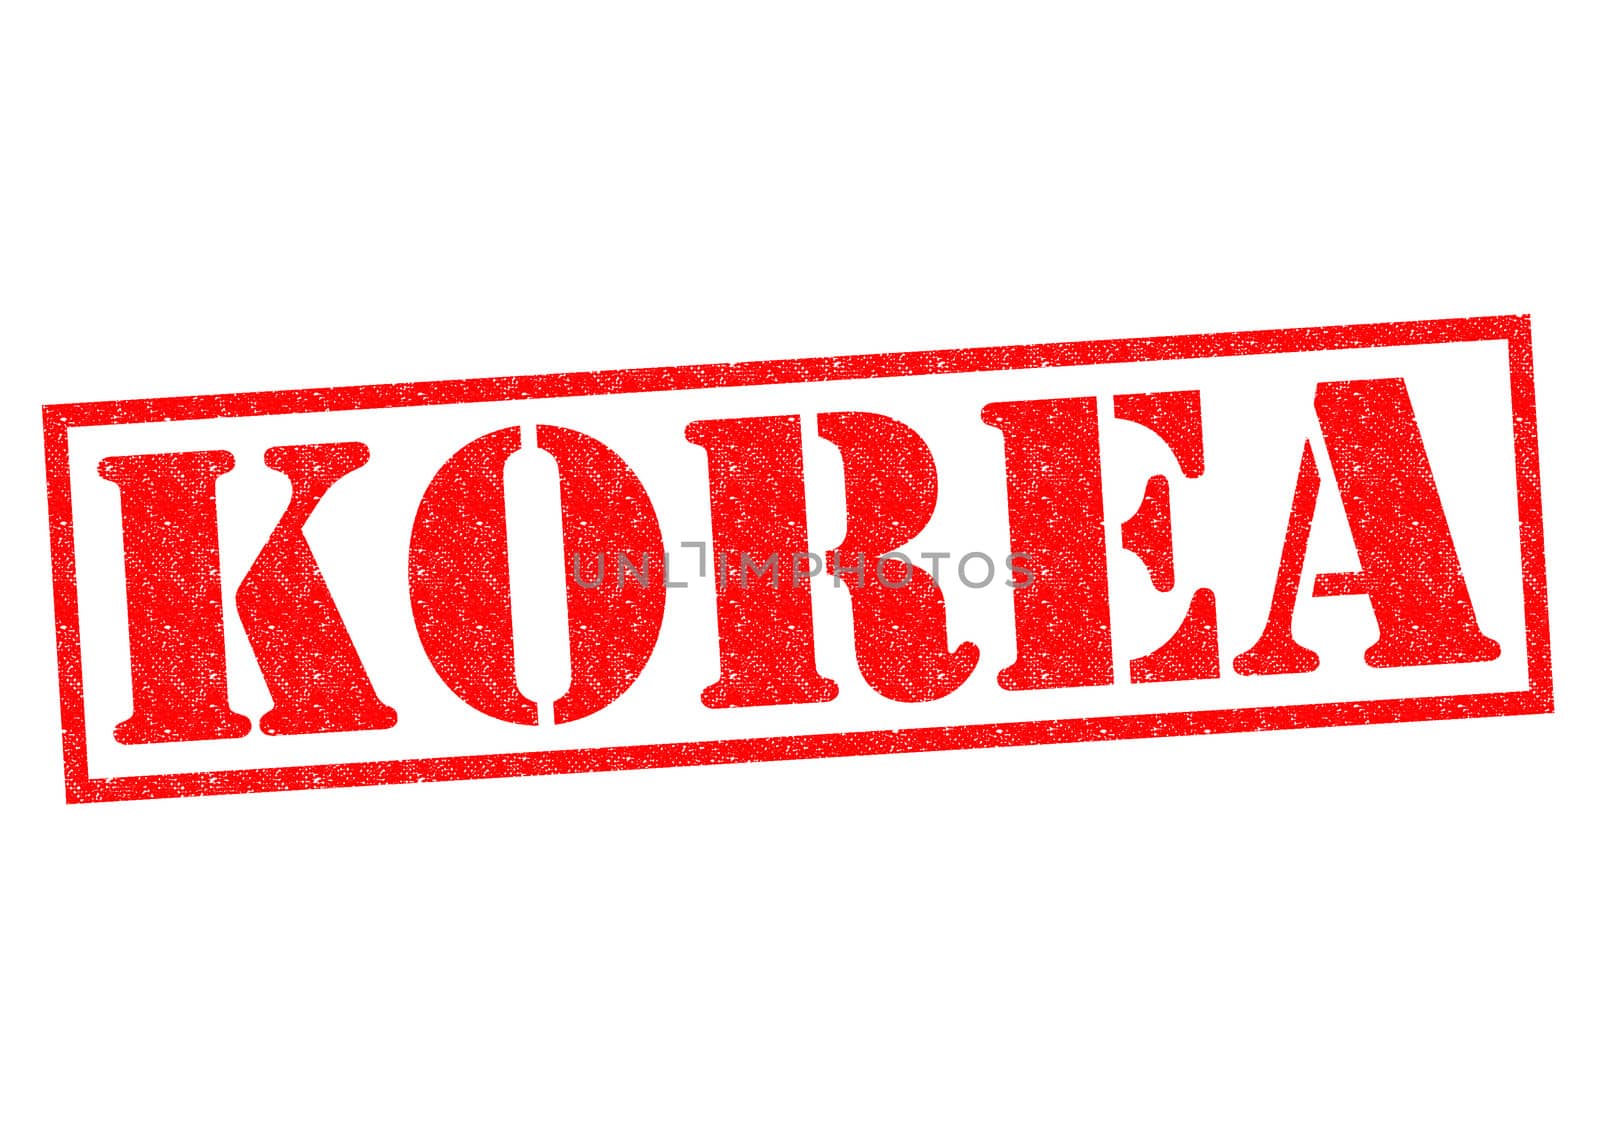 KOREA by chrisdorney